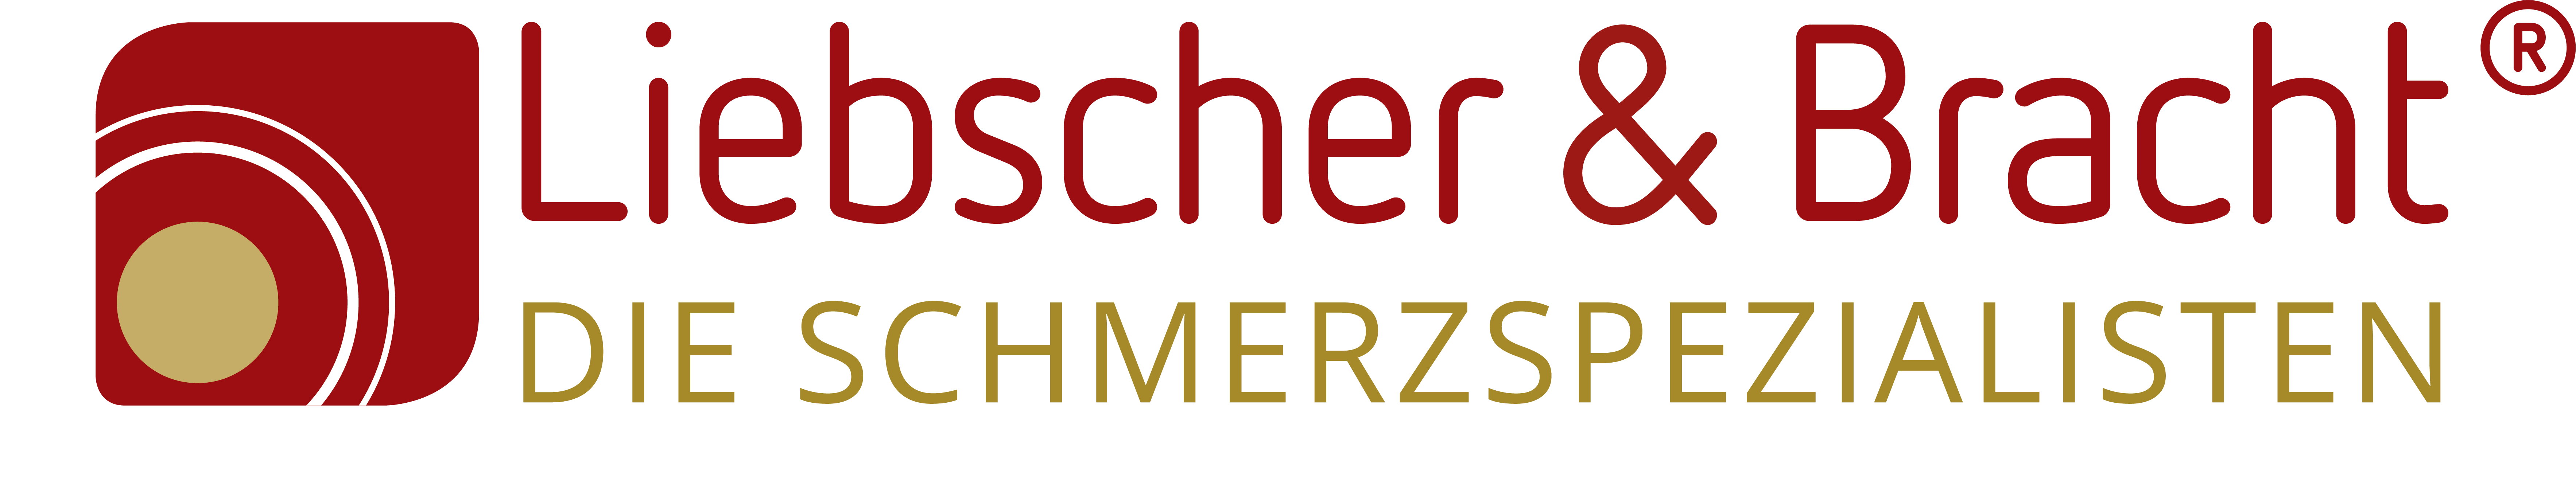 Liebscher & Bracht Praxis München